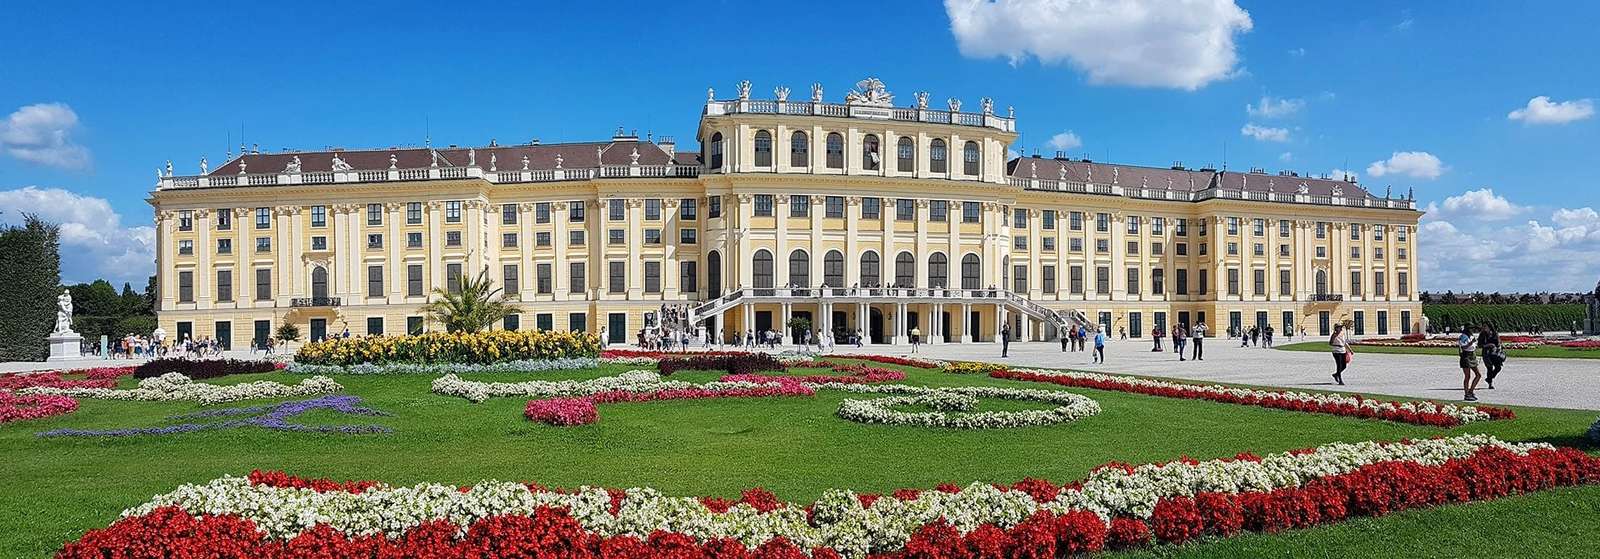 ウィーン シェーンブルン宮殿 ニーダーエスターライヒ州 オンラインパズル